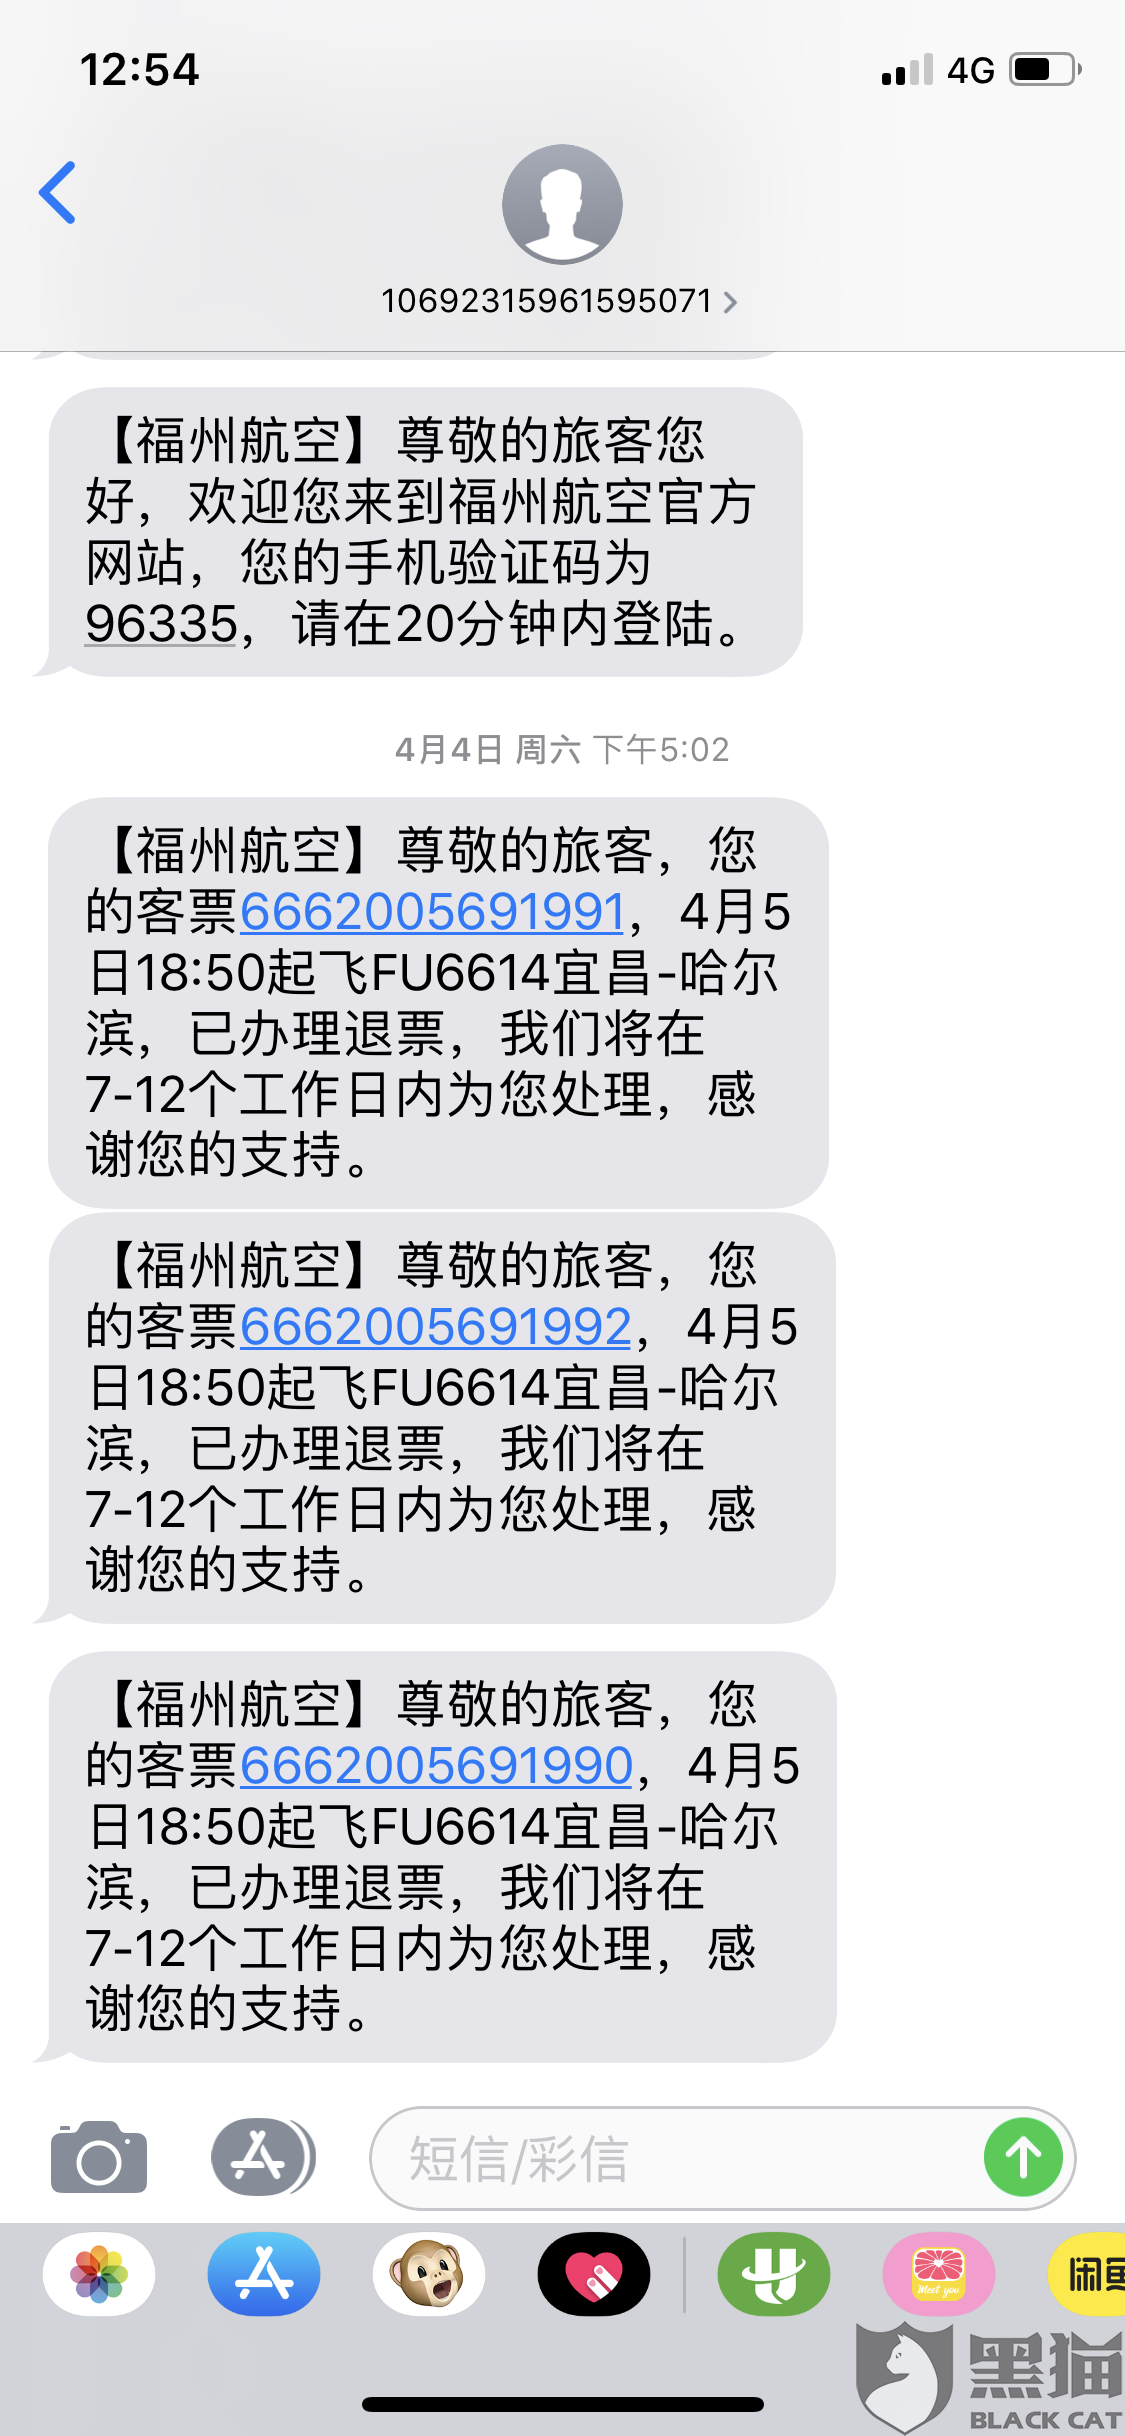 黑猫投诉:4月5日福州航空全价机票退票后至今未退款,客服人员一直不给